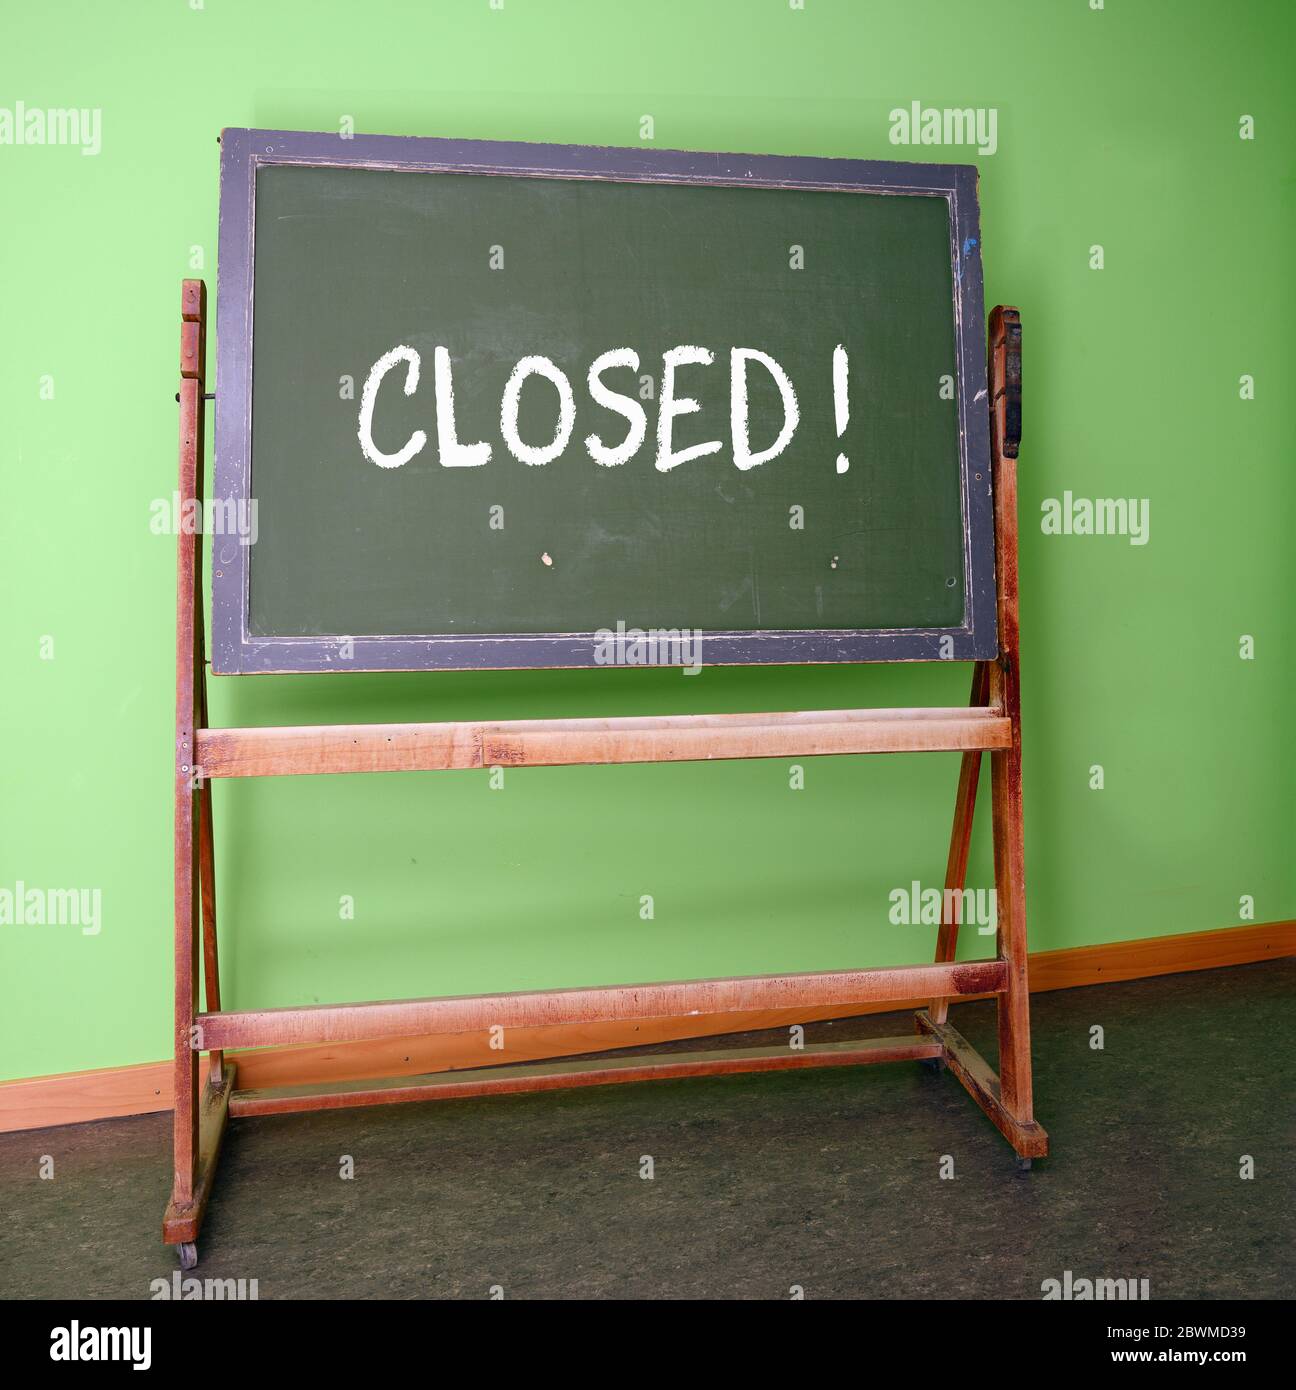 Geschlossen auf einer alten Schulchalkboard geschrieben, um die Schließung von Schulen als vorbeugende Maßnahme während des Infektionsrisikos mit dem Curonavirus zu symbolisieren Stockfoto